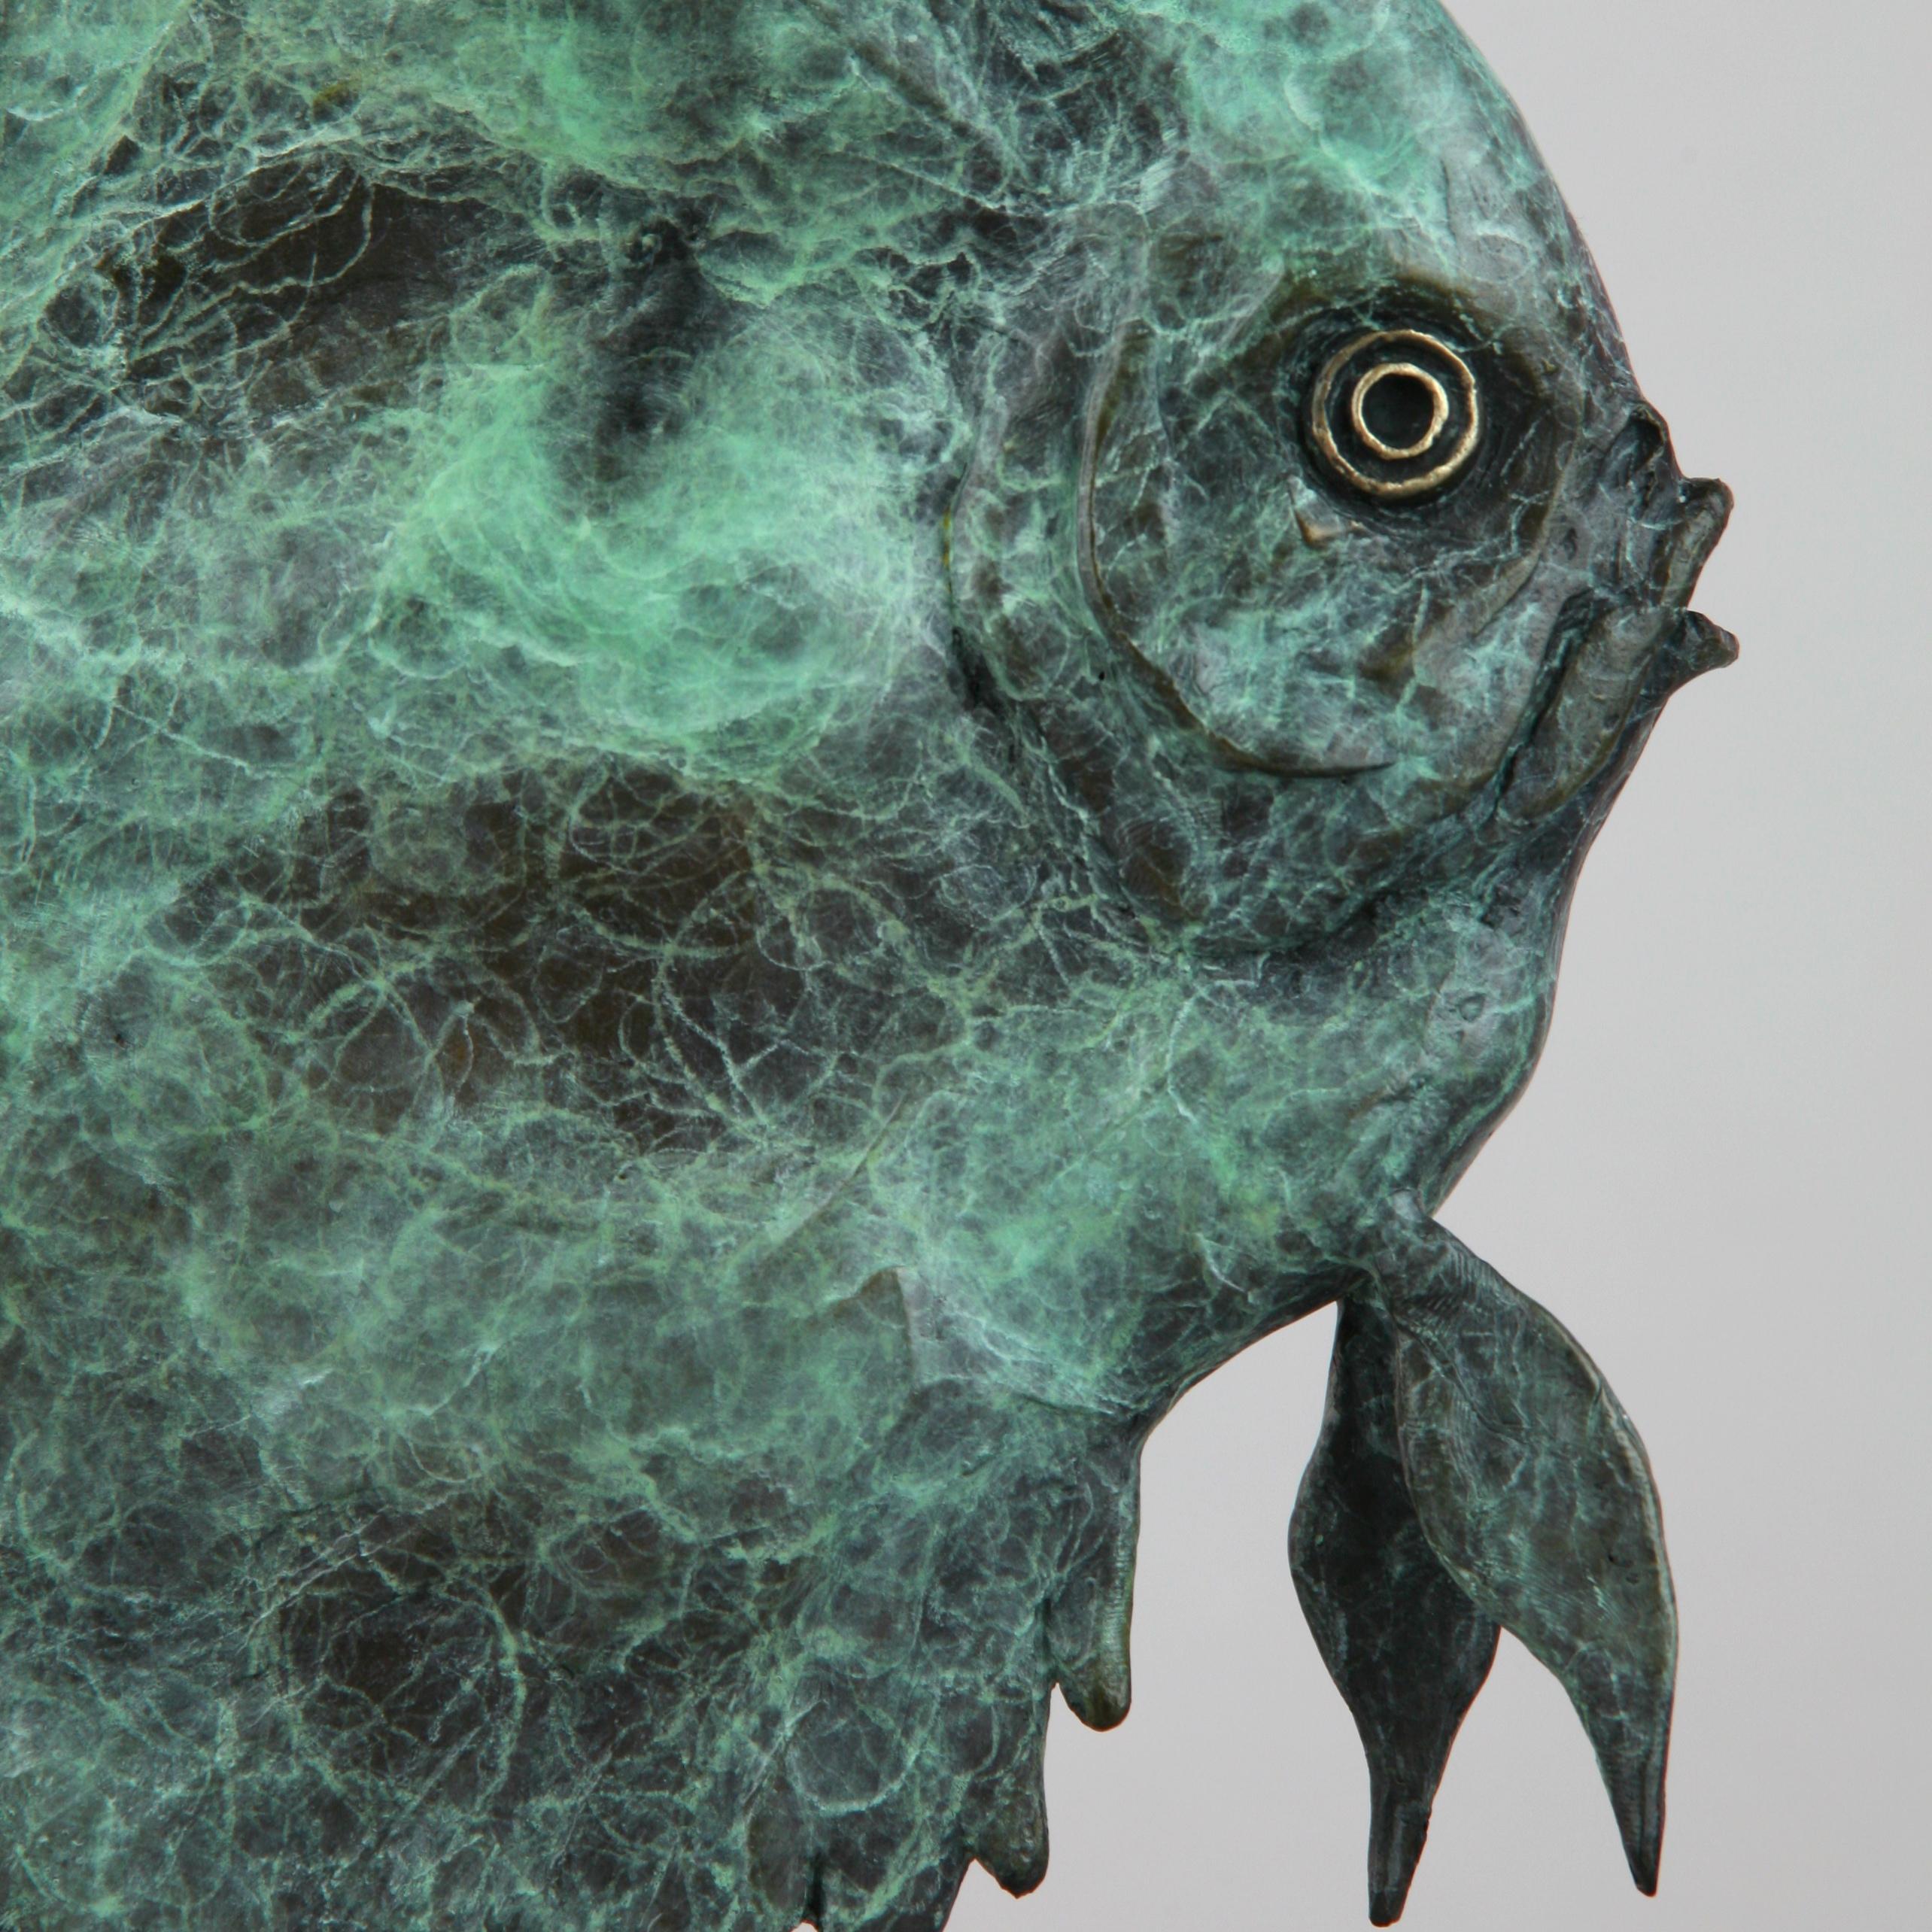 bronze fish sculpture